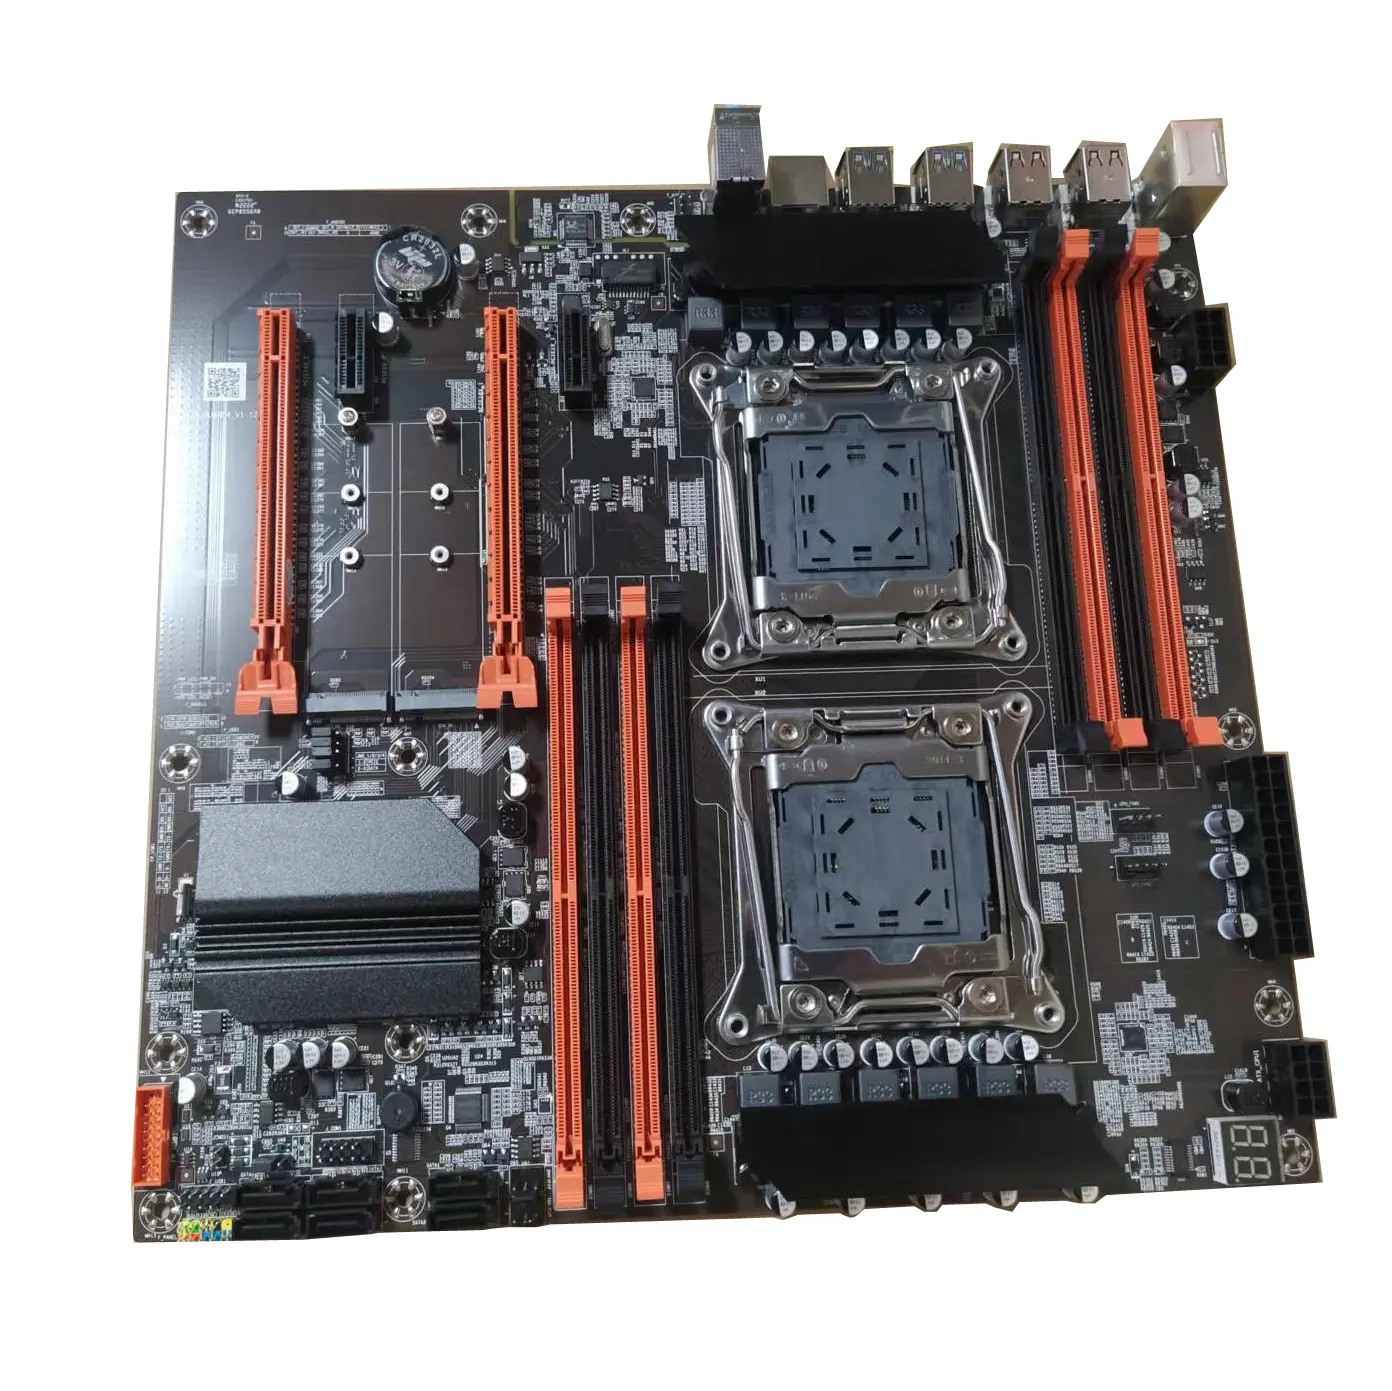 ALEO Zx-Du99 DDR4 सीपीयू मदरबोर्ड डुअल Xeon E5 Lga2011 V3 V4 सीरीज प्रोसेसर डुअल चिपसेट X99 पीसी गेमिंग मदरबोर्ड को सपोर्ट करता है